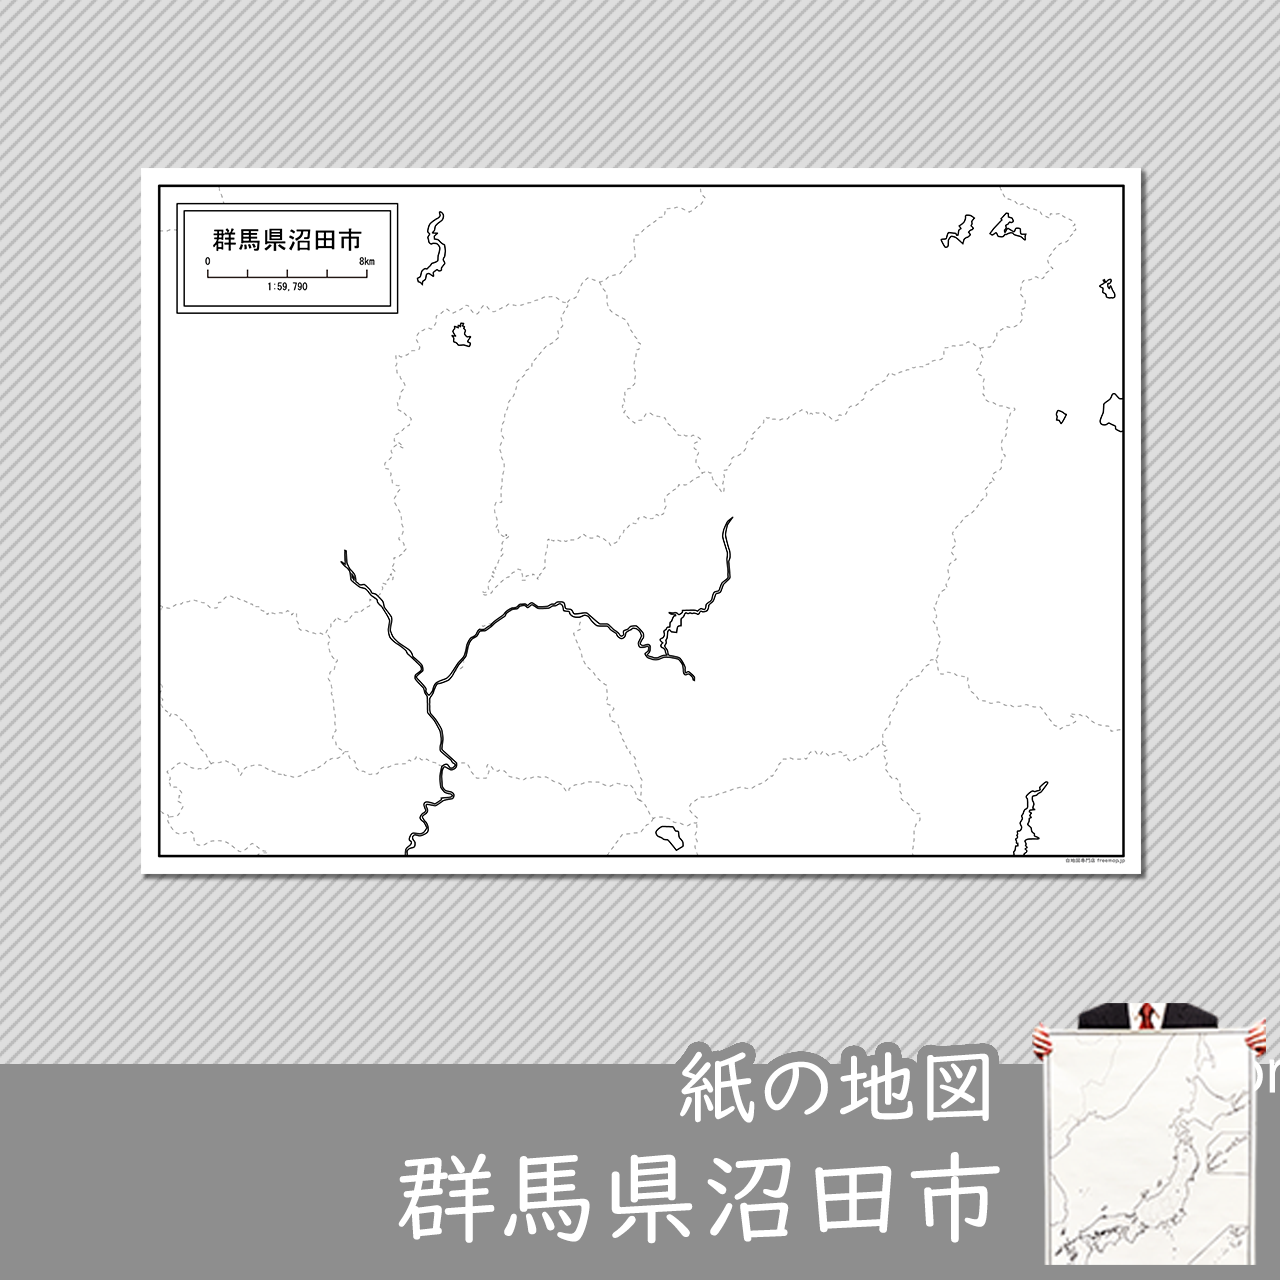 沼田市の紙の白地図のサムネイル